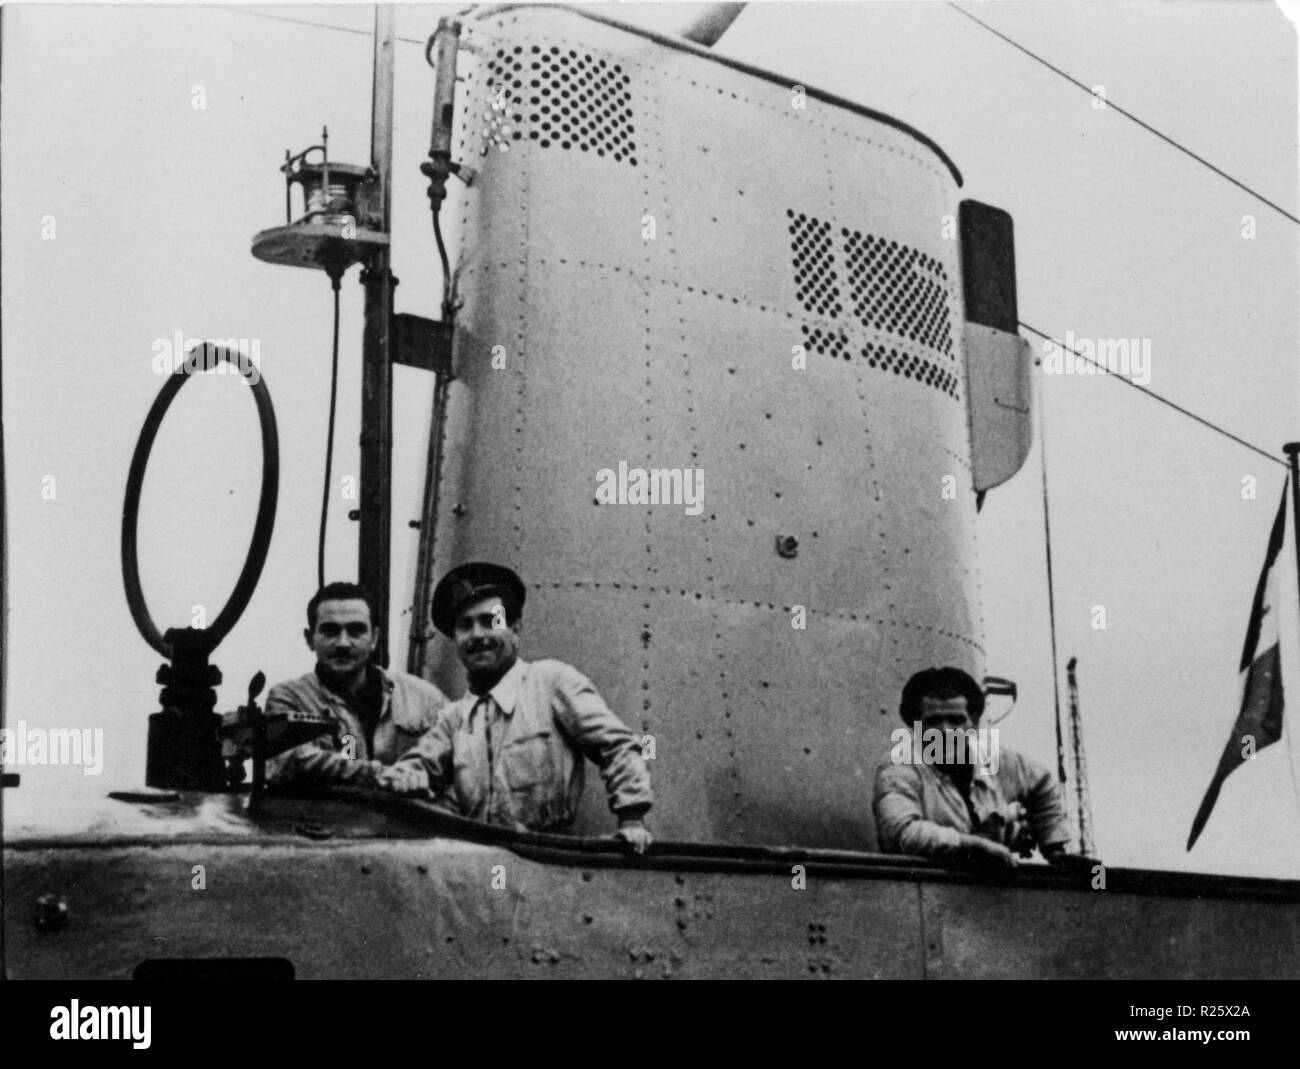 WWII italienische U-Boot in Bordeaux-betasom Basis in Bordeaux, Frankreich Stockfoto